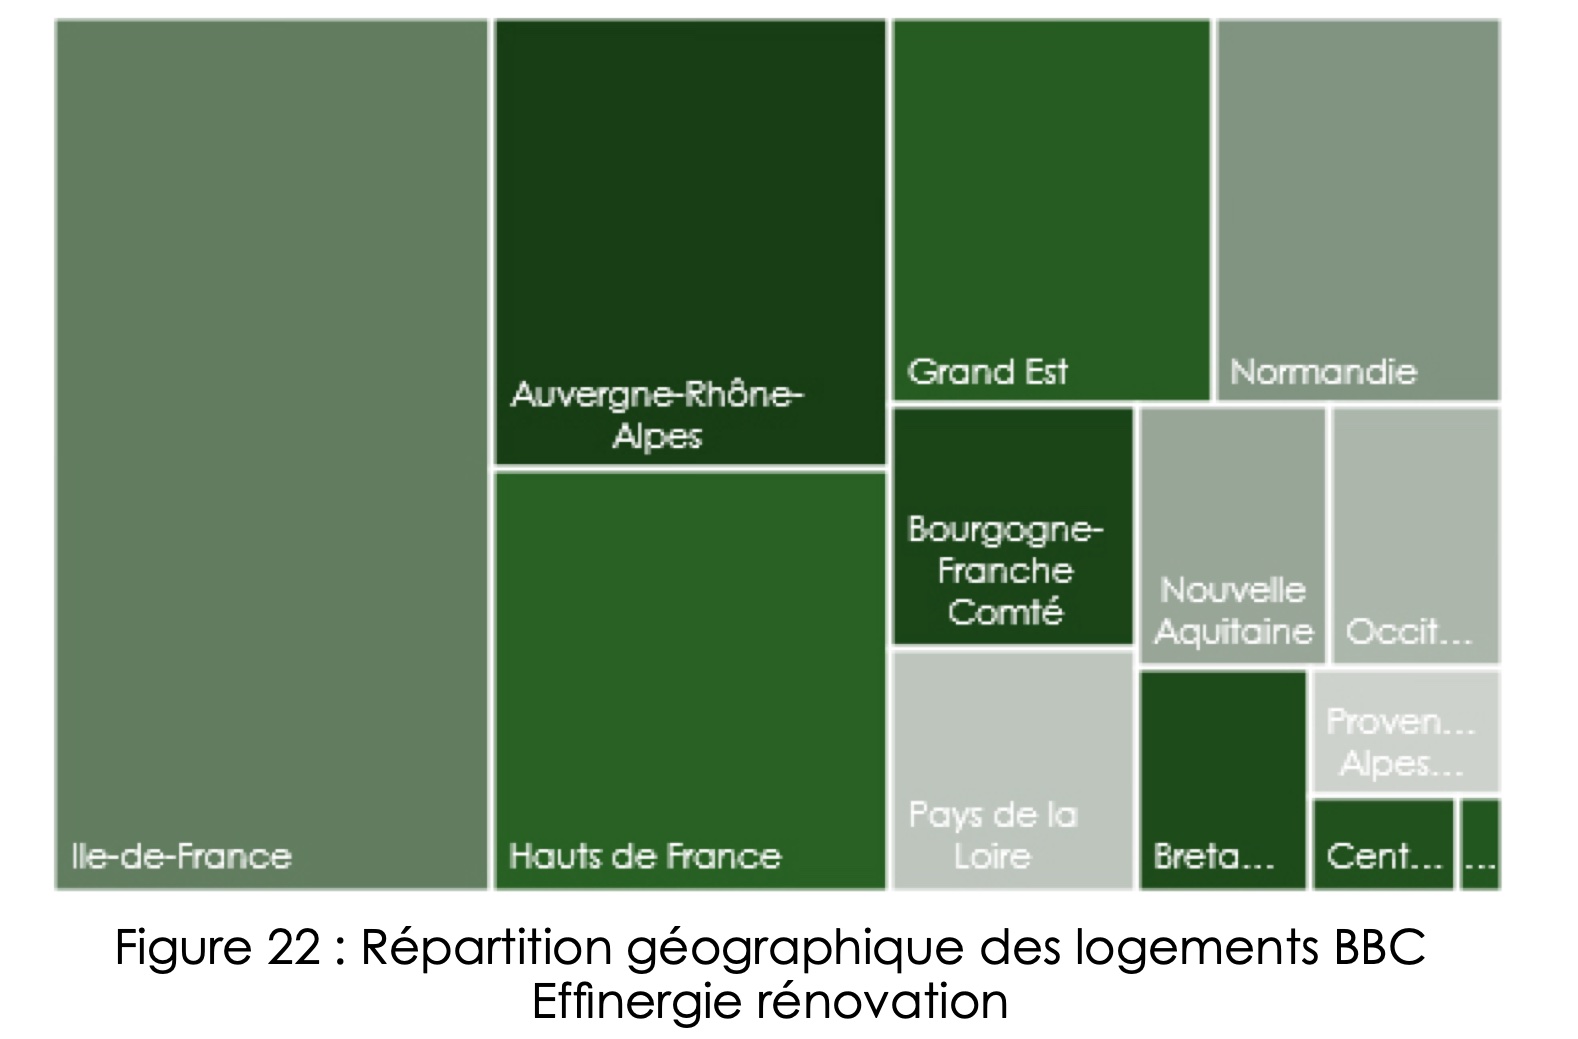 Figure 22 : Répartition géographique des logements BBC Effinergie rénovation